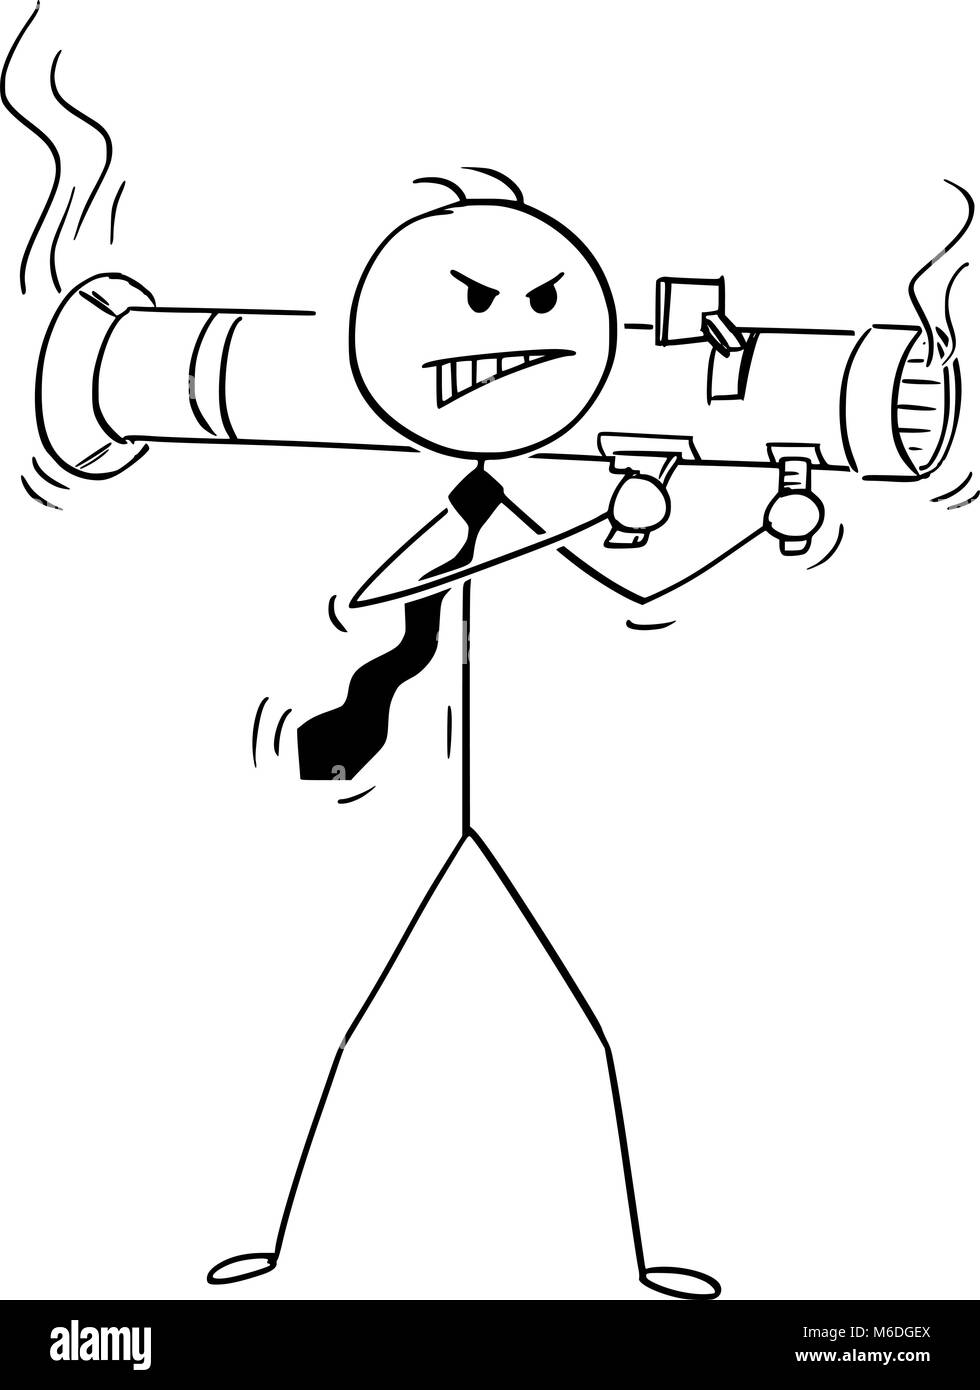 Caricature de l'homme en colère de tir Rocket Launcher Illustration de Vecteur